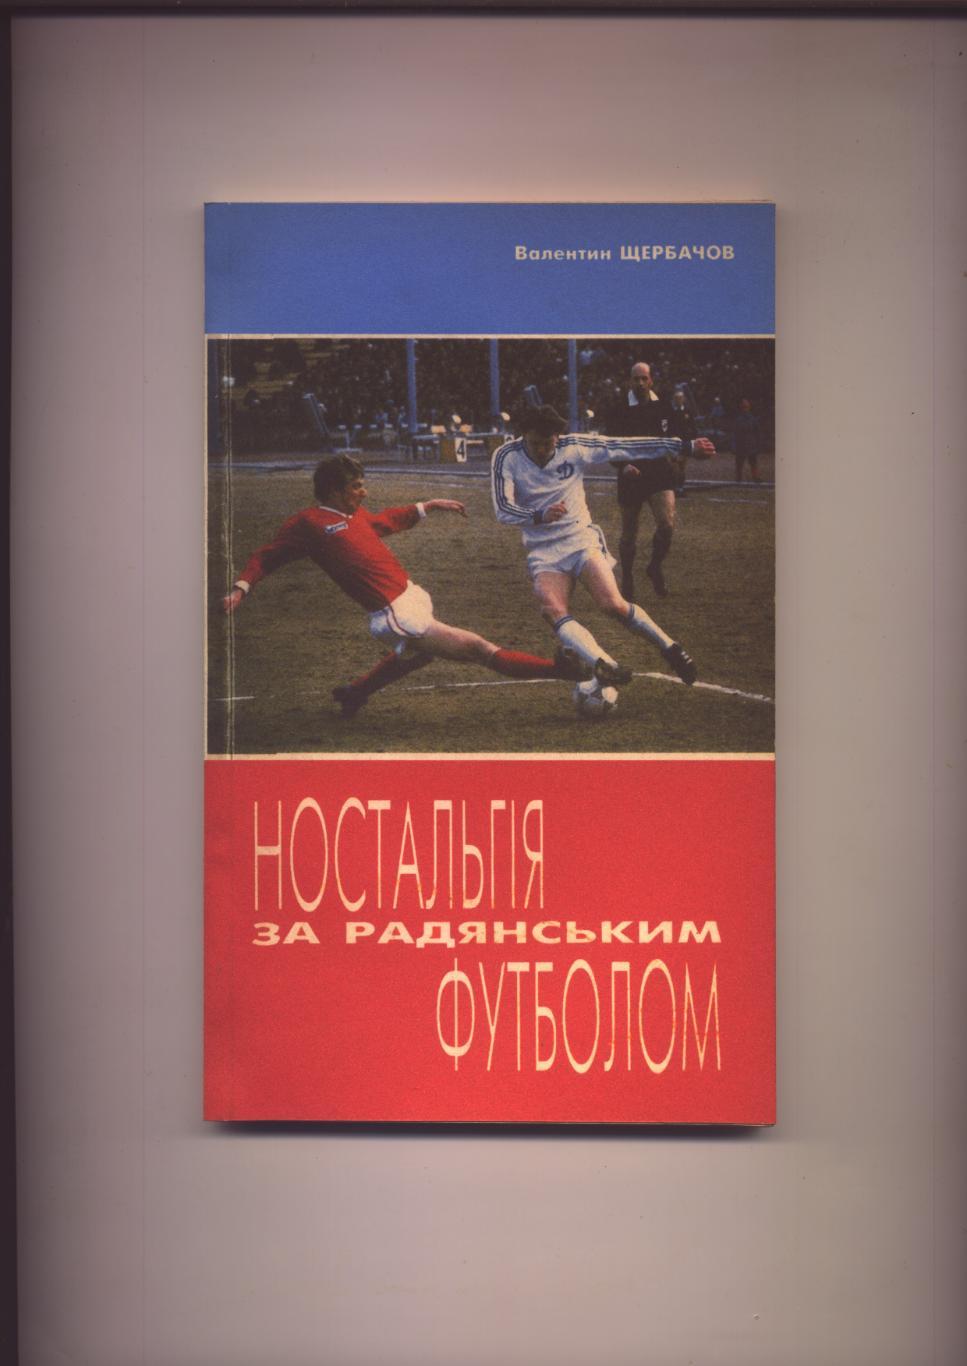 Книга Ностальгiя за радянським футболом 1995 г Киiв 144 стр.